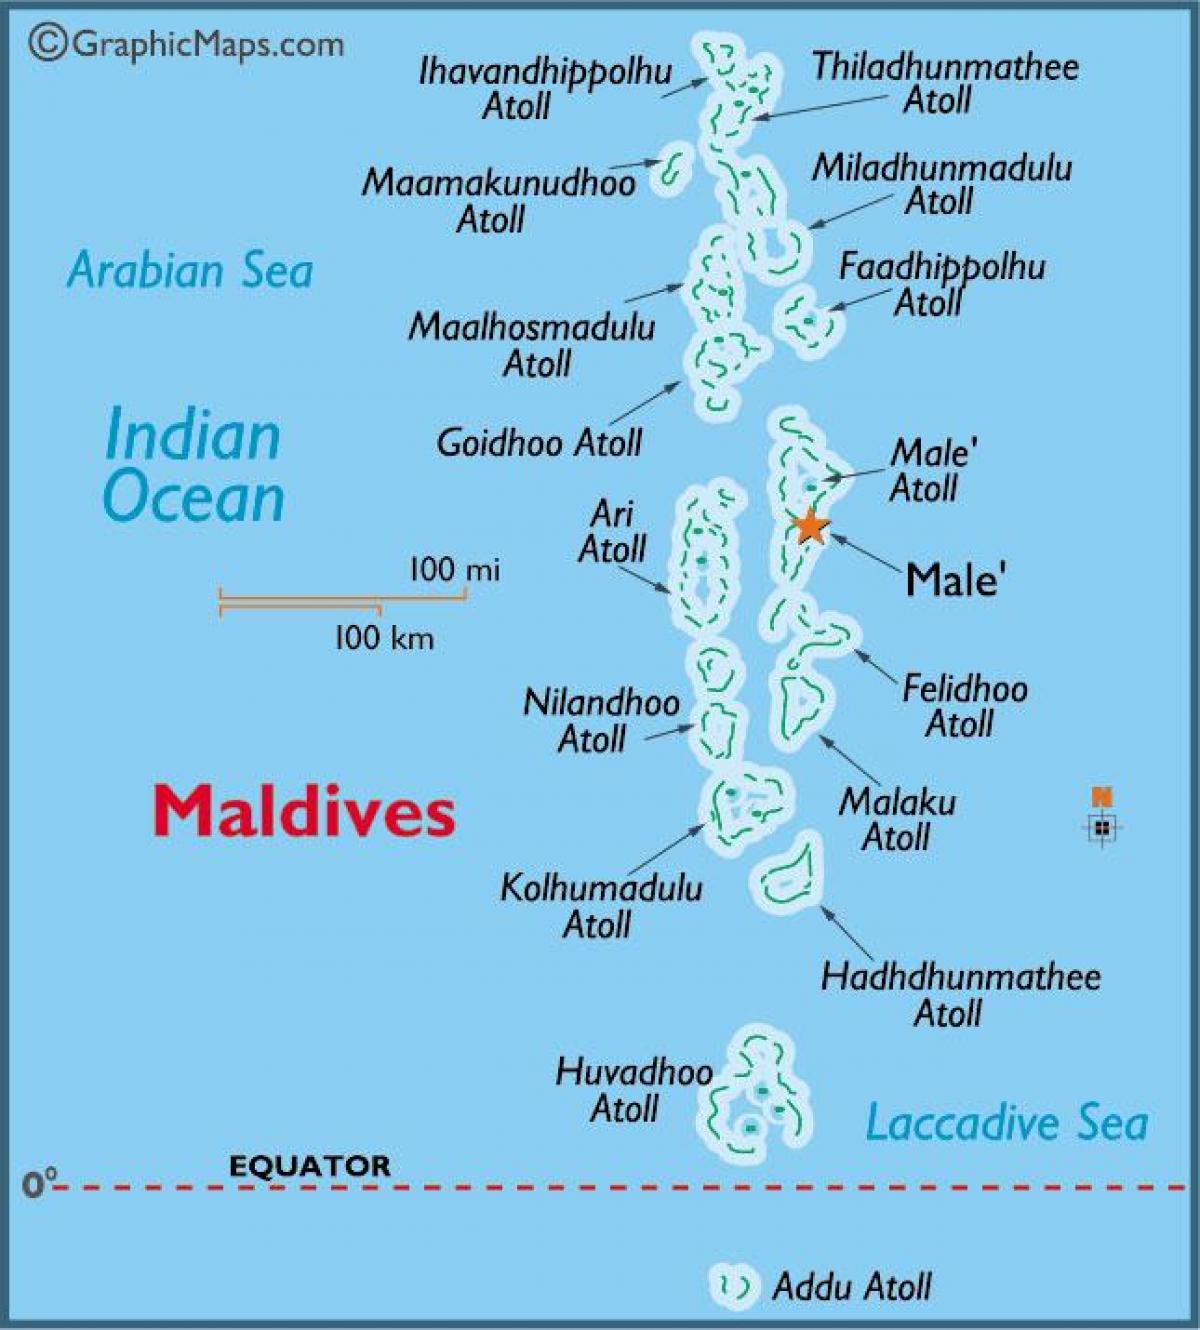 bele atol maldiv kat jeyografik